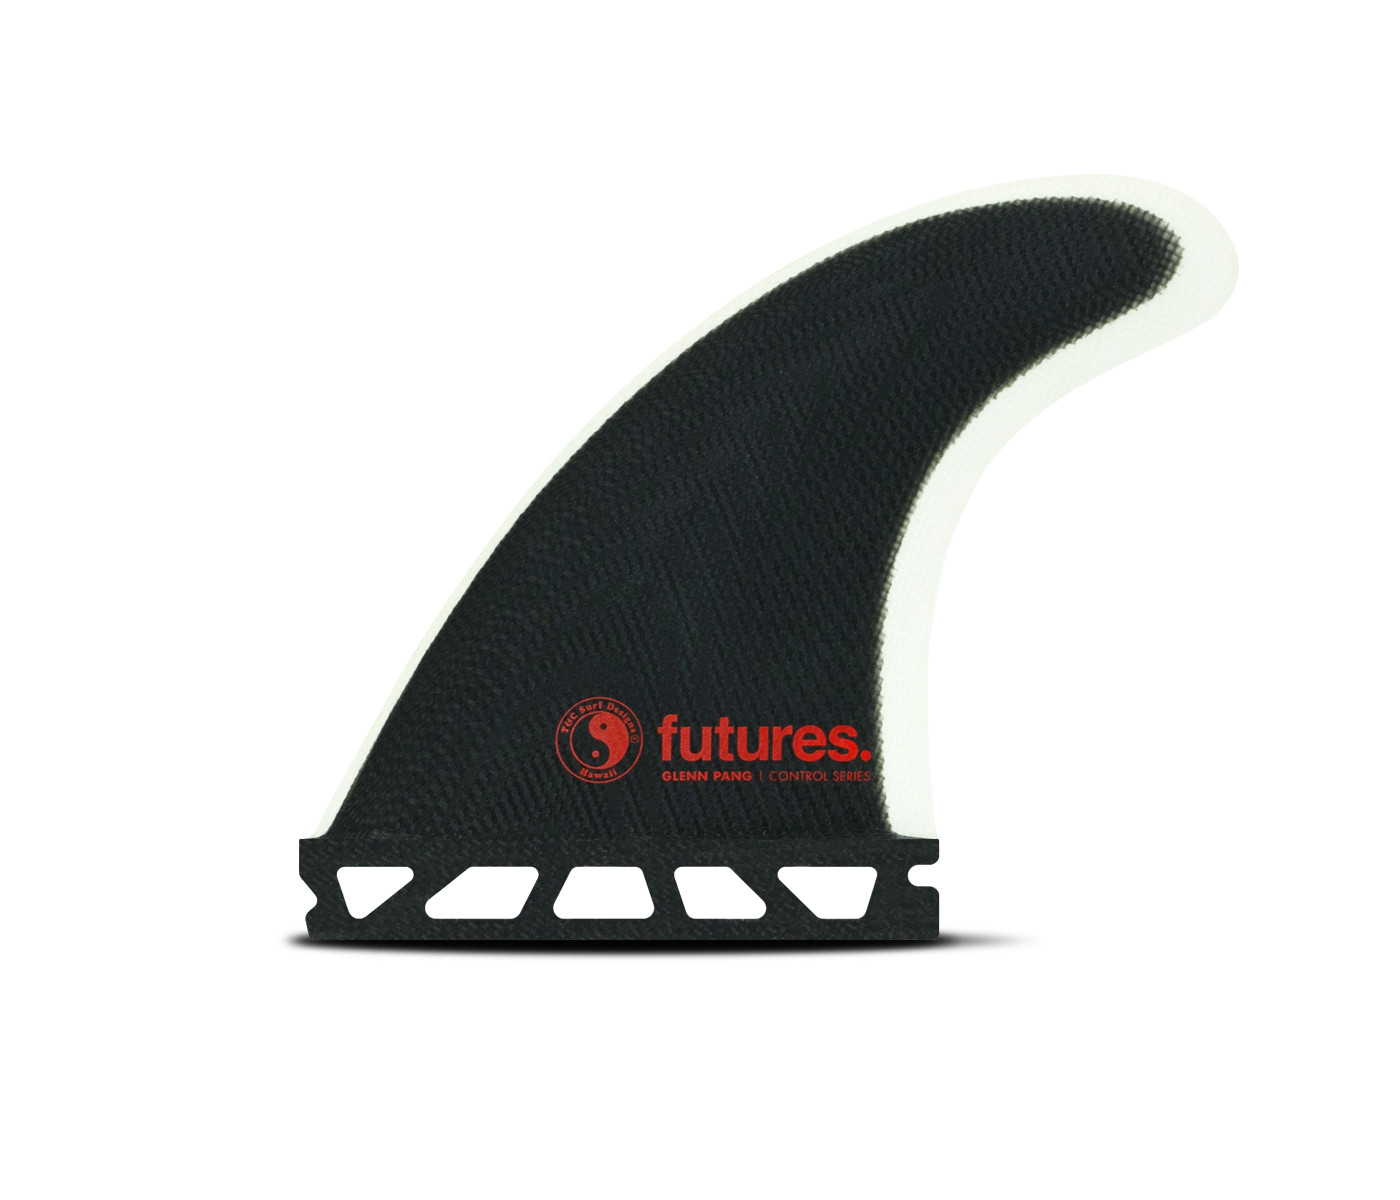 Thruster fins - T&C Glenn Pang Fiberglass Black / White, FUTURES.